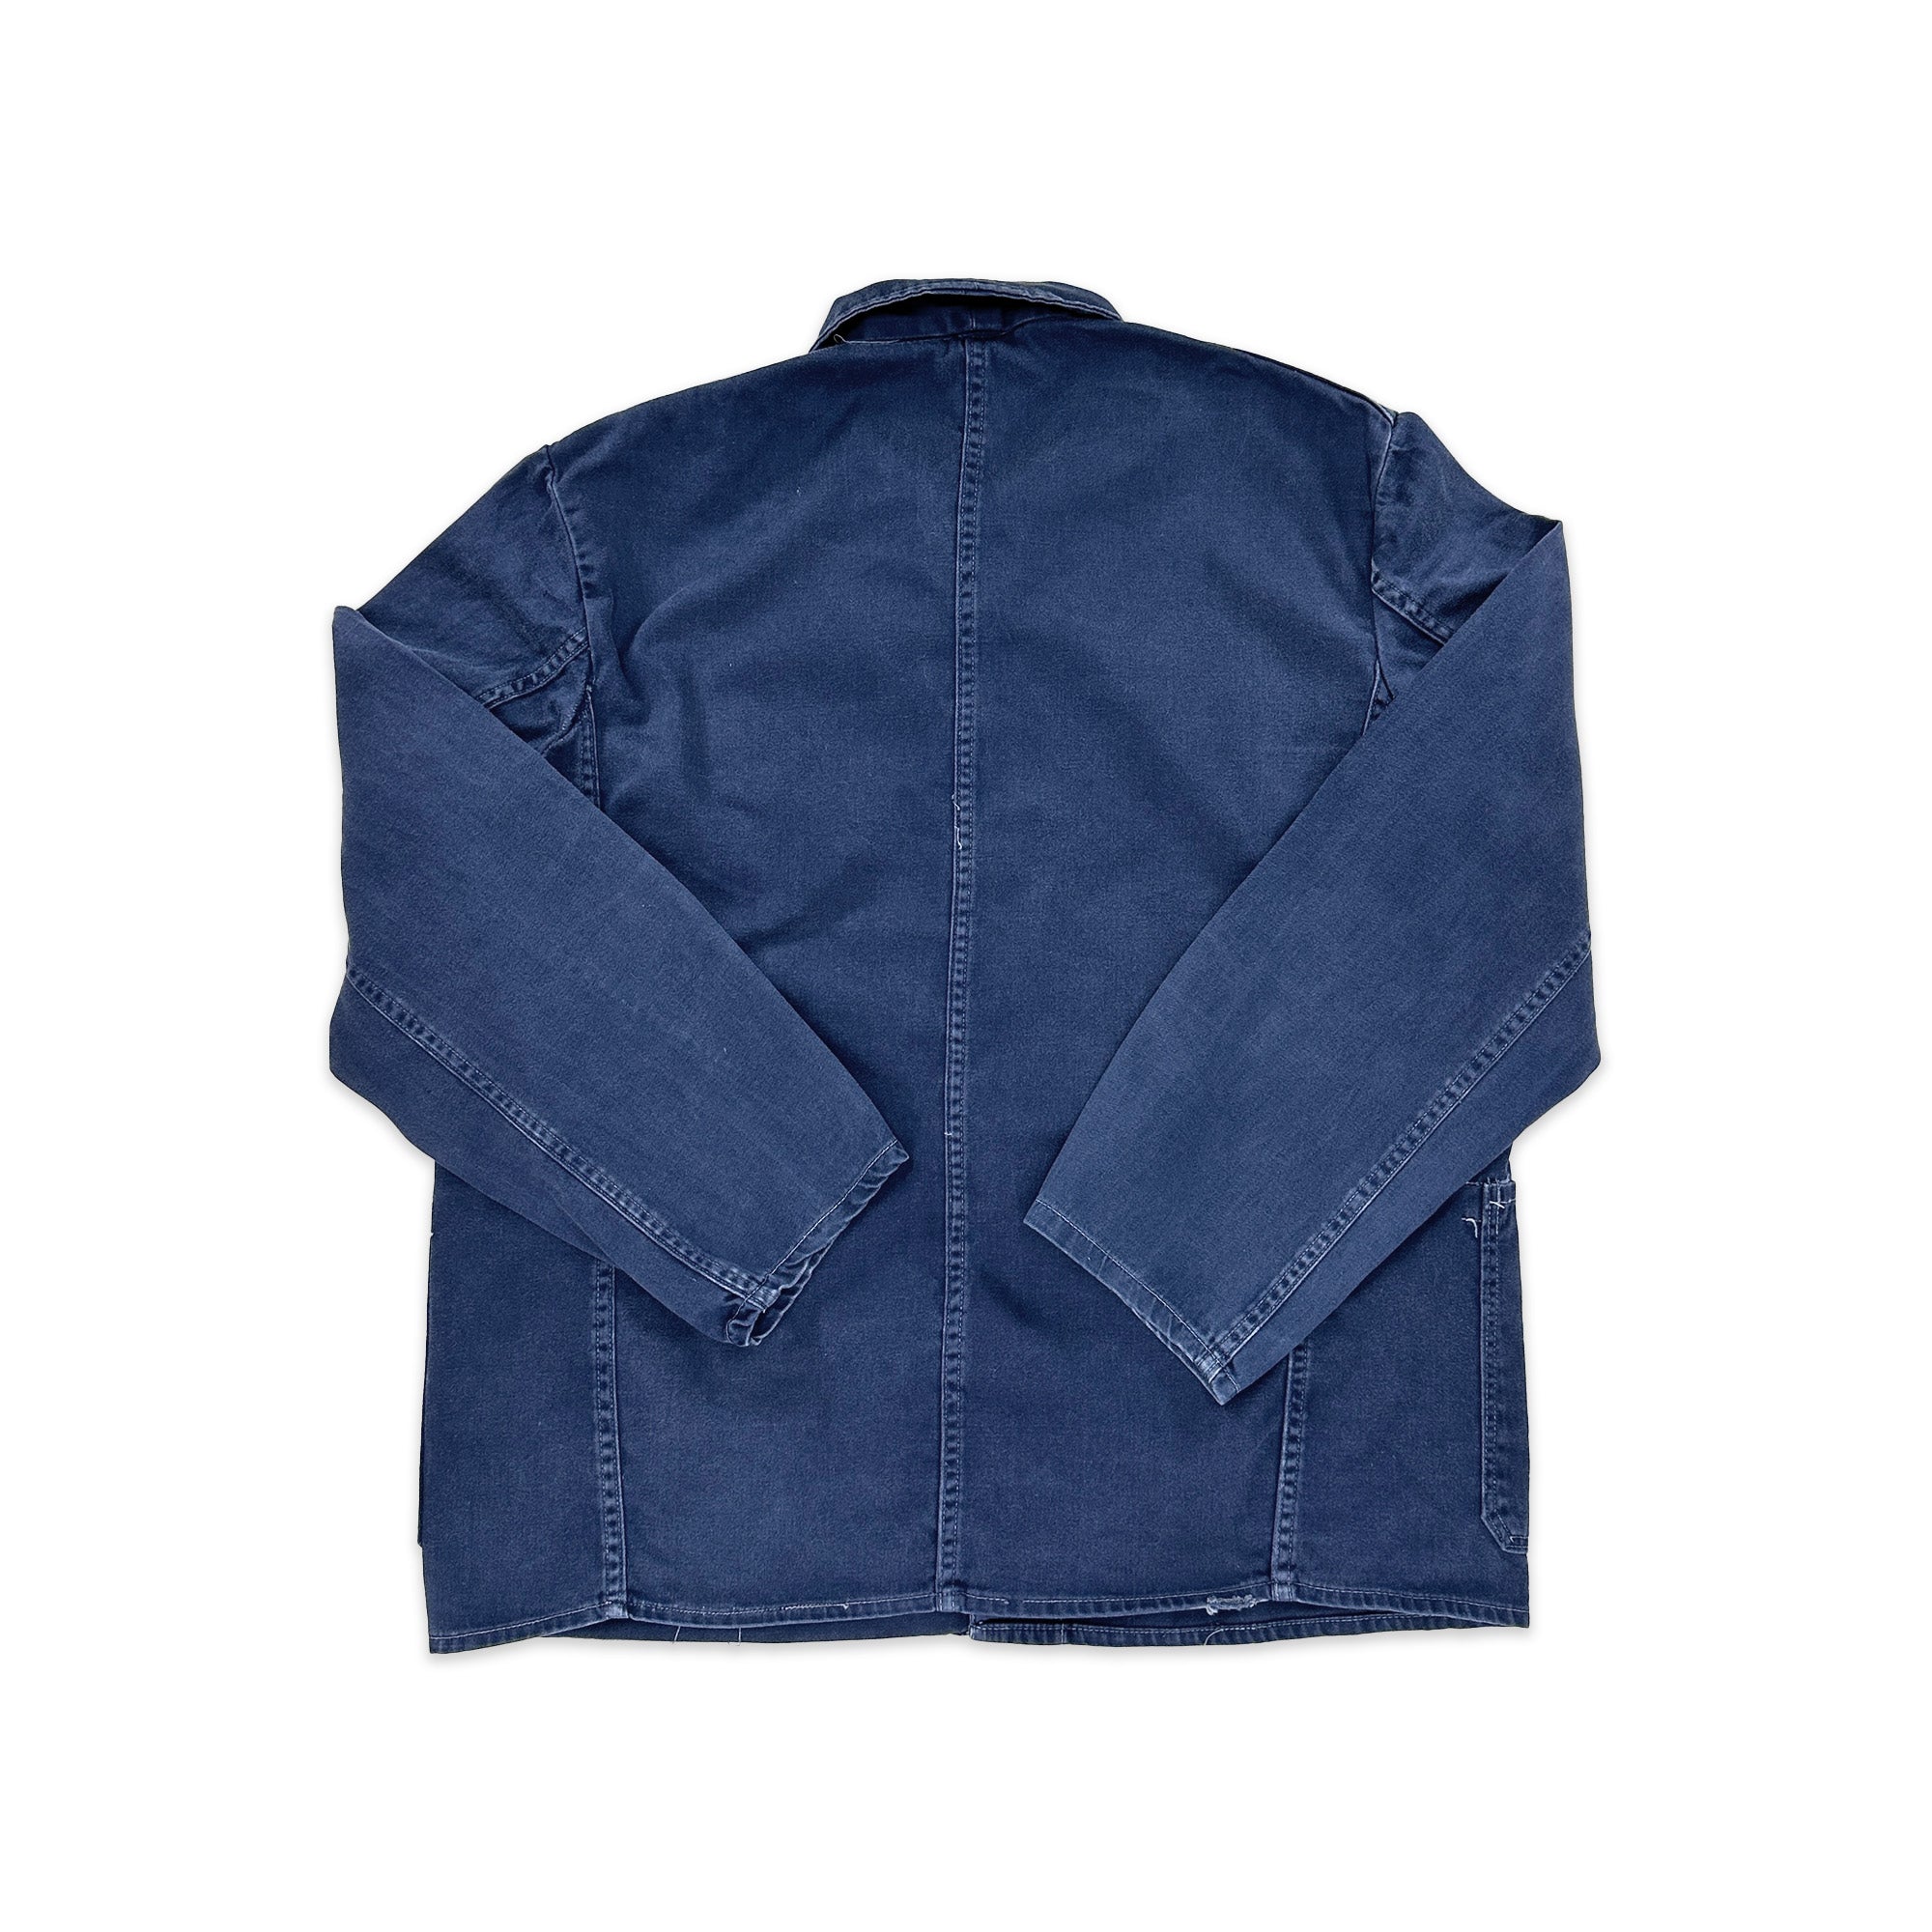 Thrashed Vintage French Work Jacket - Medium / Large